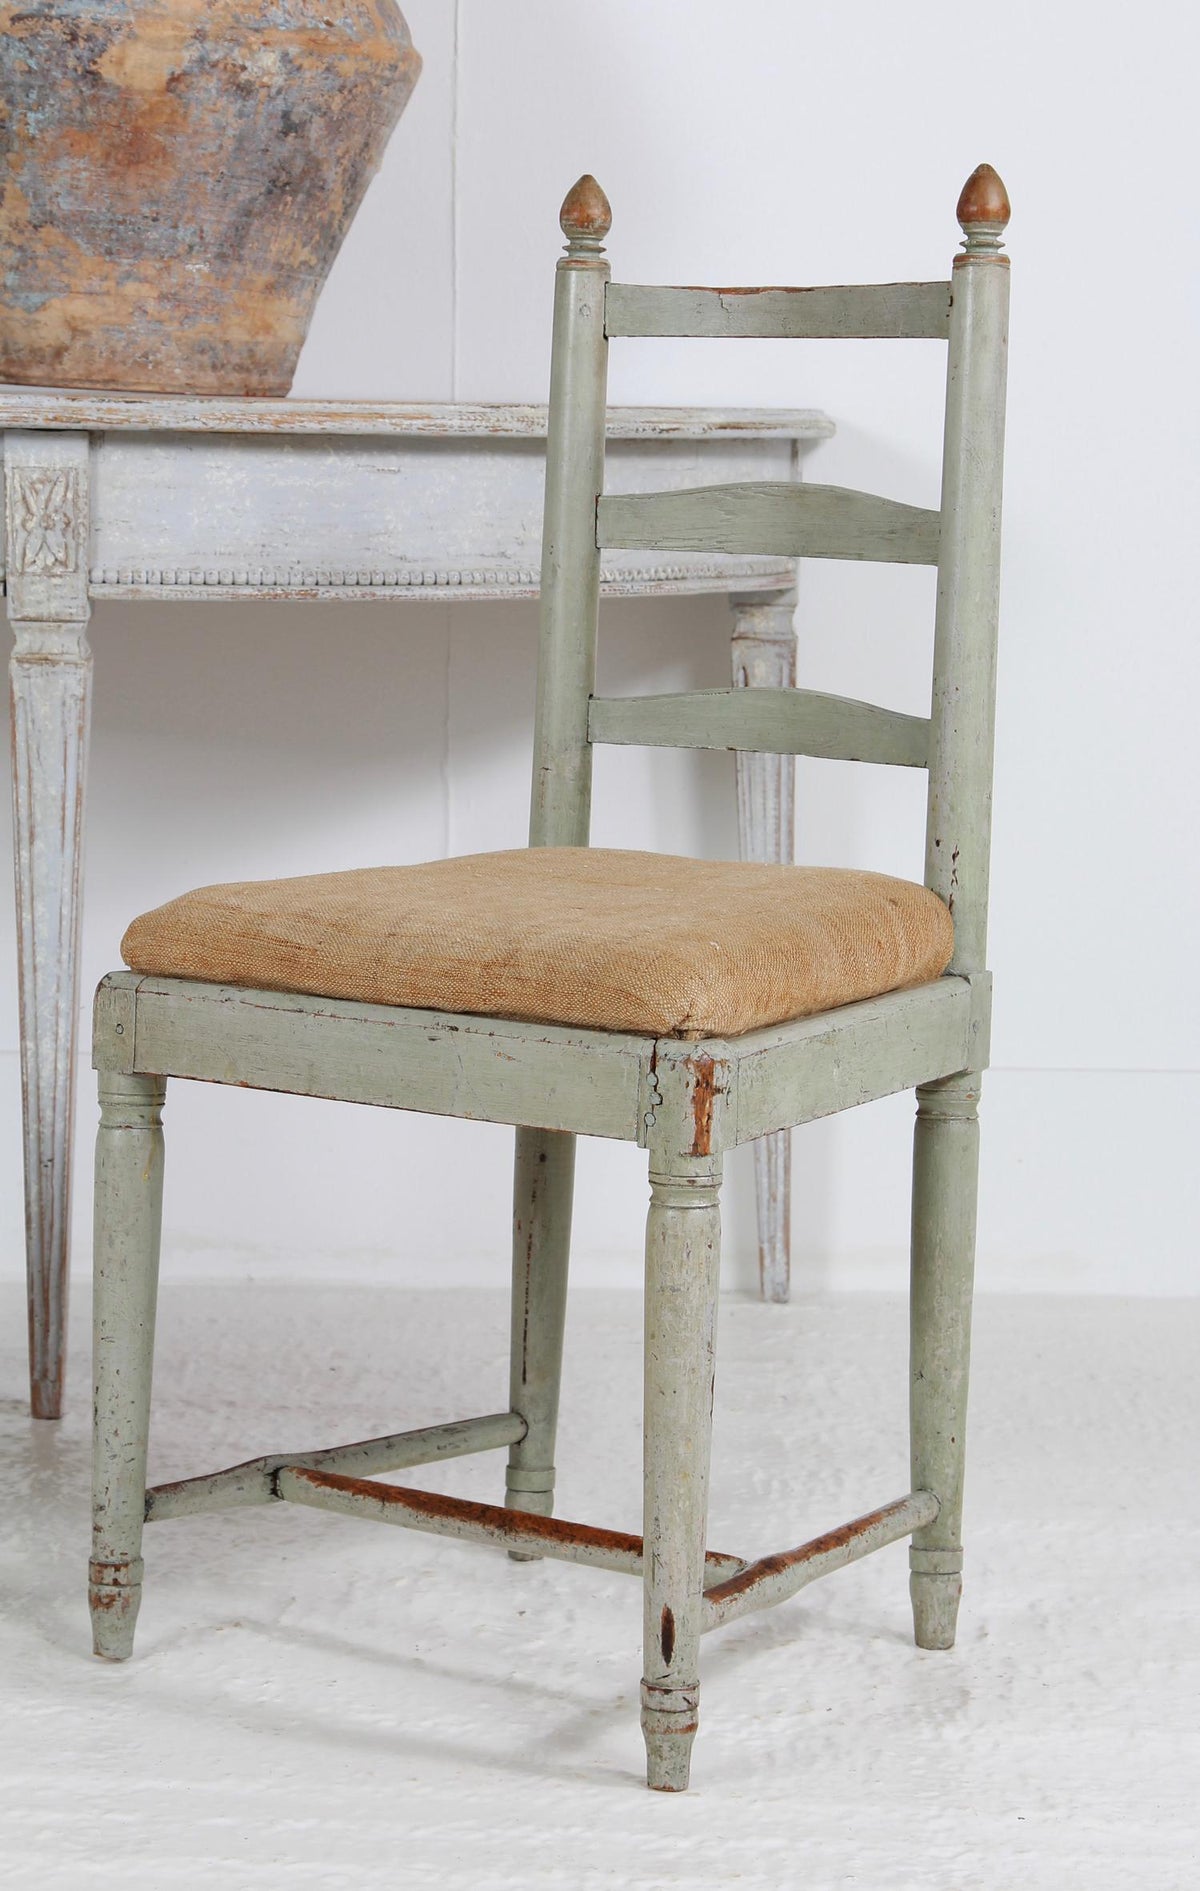 Striking Rare Pair of Swedish 18thC Gripsholm Ladder Back Chairs